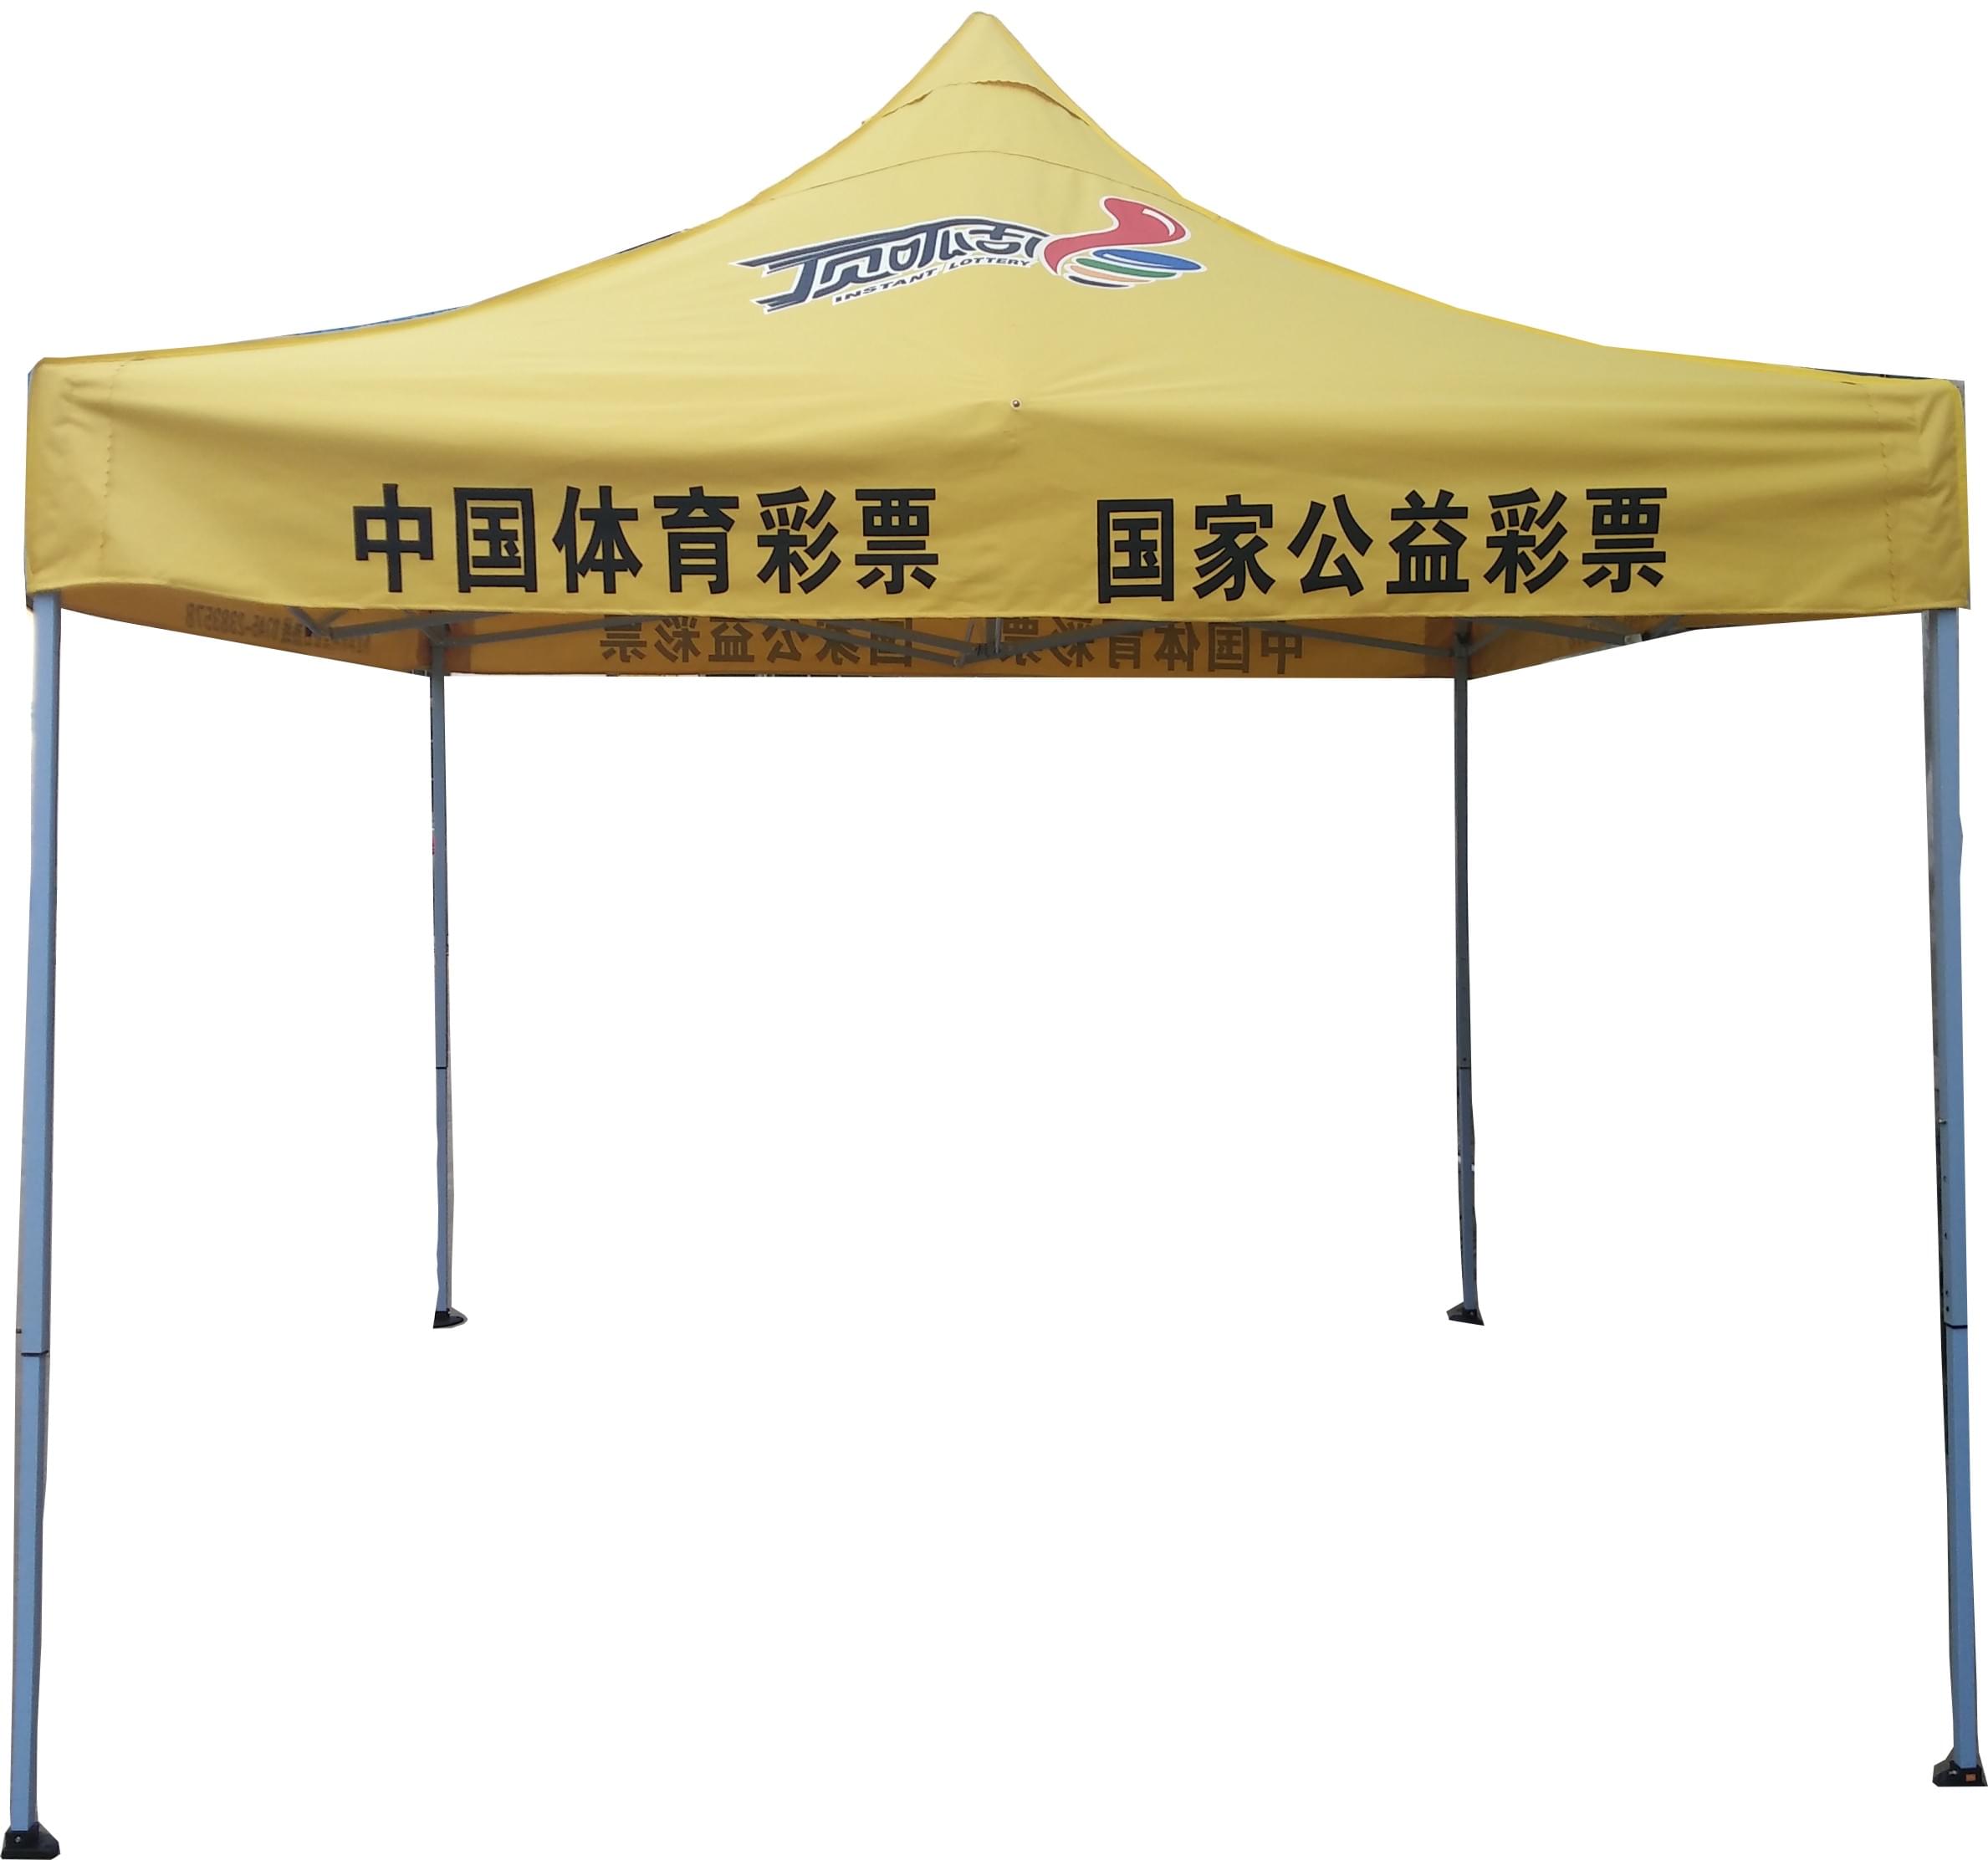 [金又来帐篷]湖南3米x3米帐篷广告帐篷